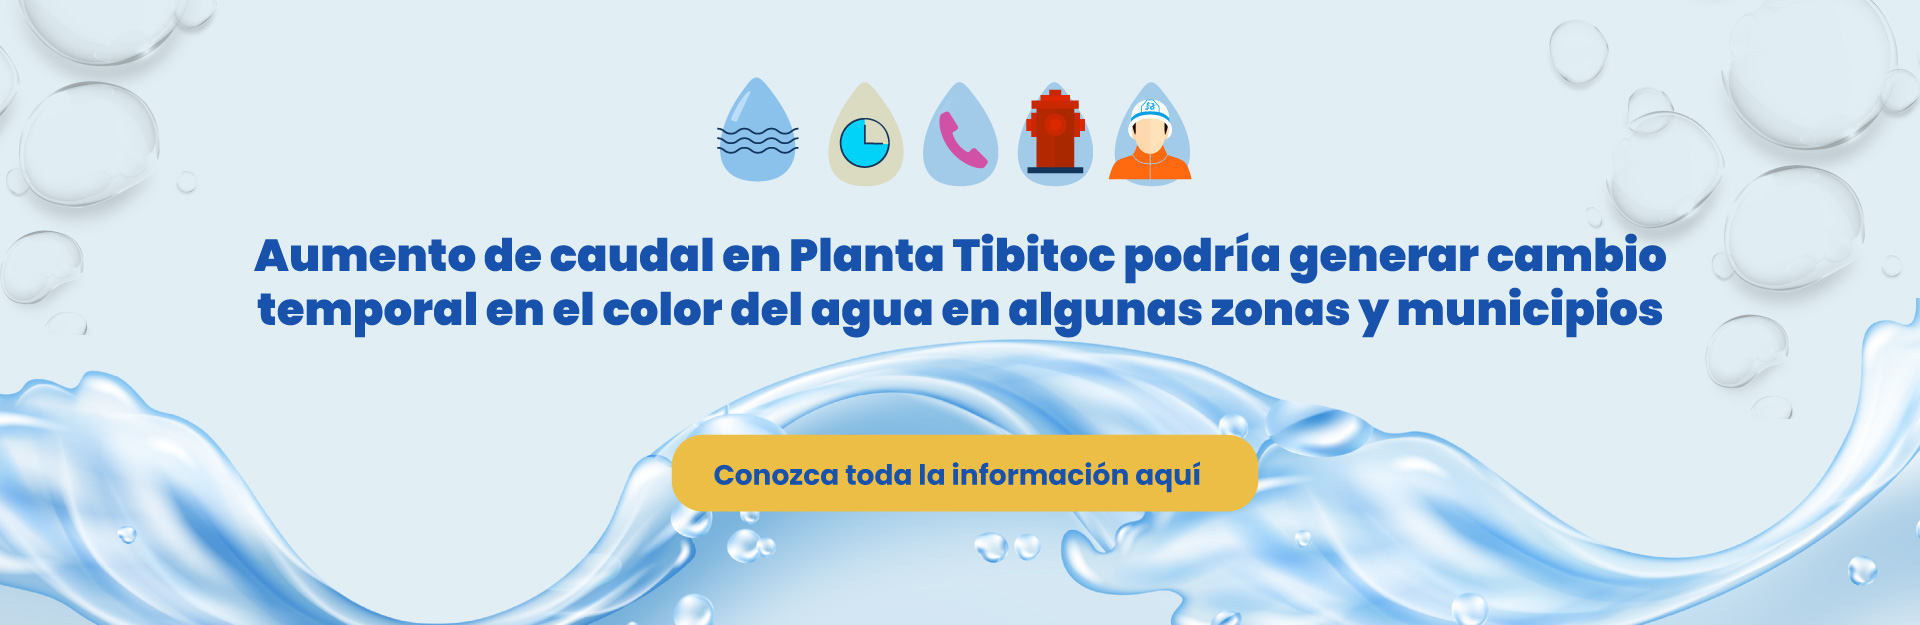 Aumento de caudal en Planta Tibitoc podría generar cambio temporal en el color del agua en algunas zonas de Bogotá y municipios vecinos